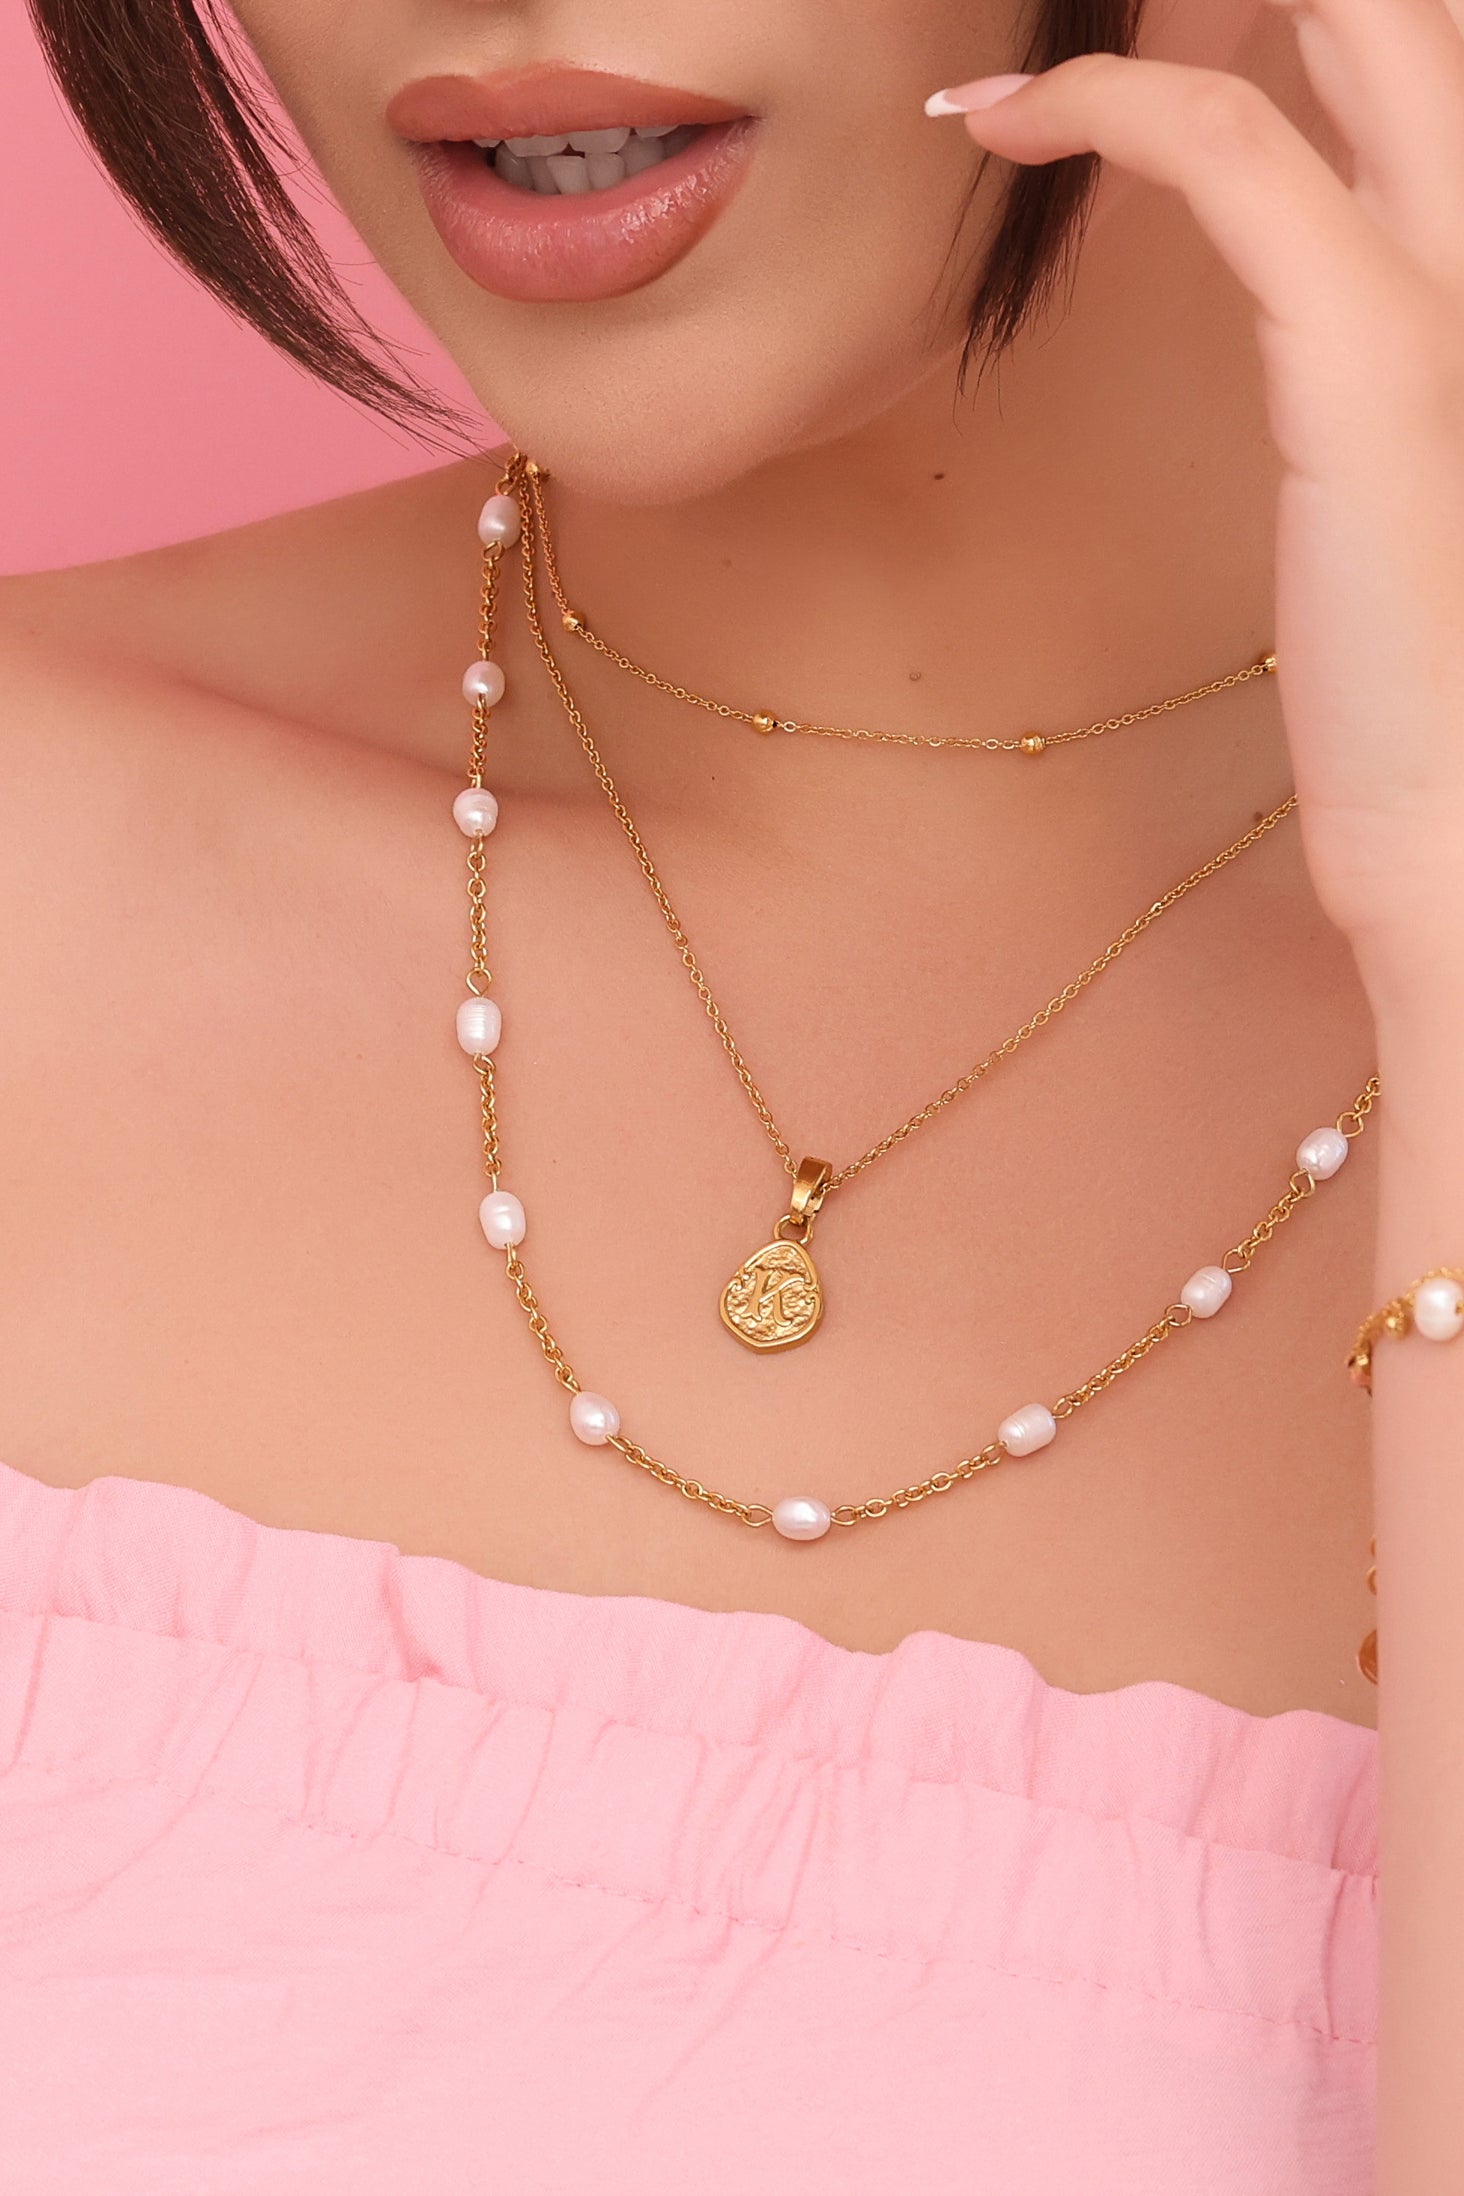 &quot;K&quot; Tberfil Letter Pendant with Petite Adjustable Chain Necklace